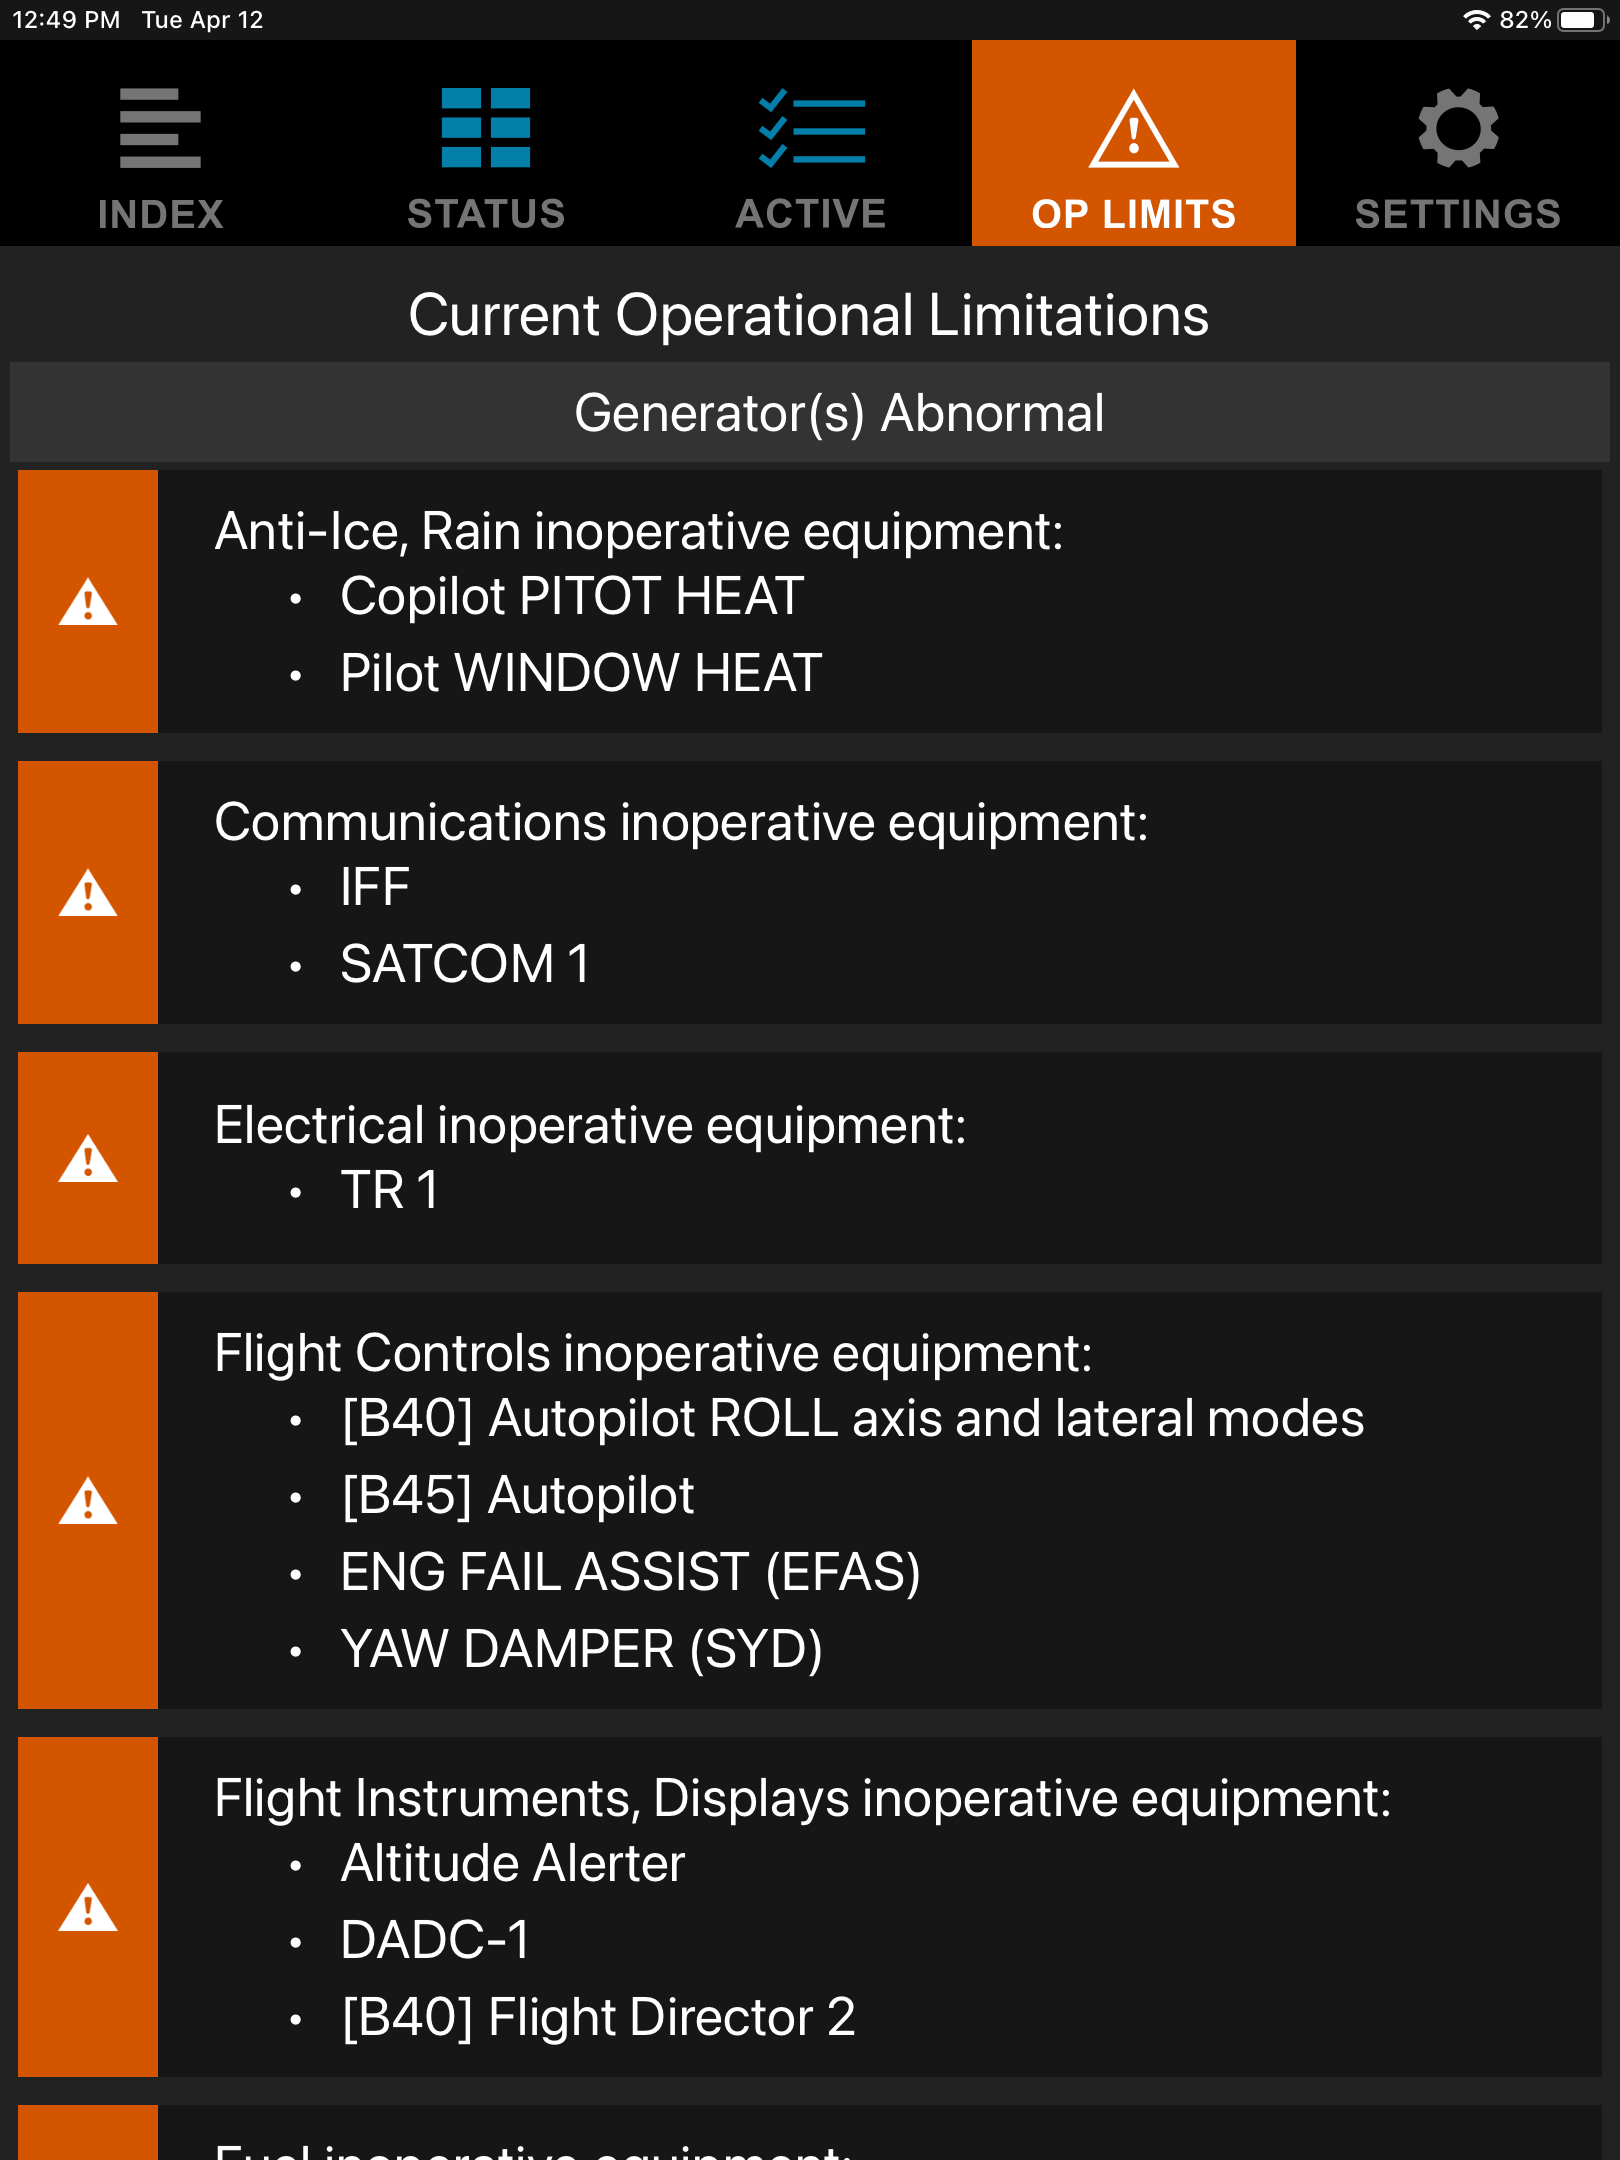 Screen capture shows emergency procedures